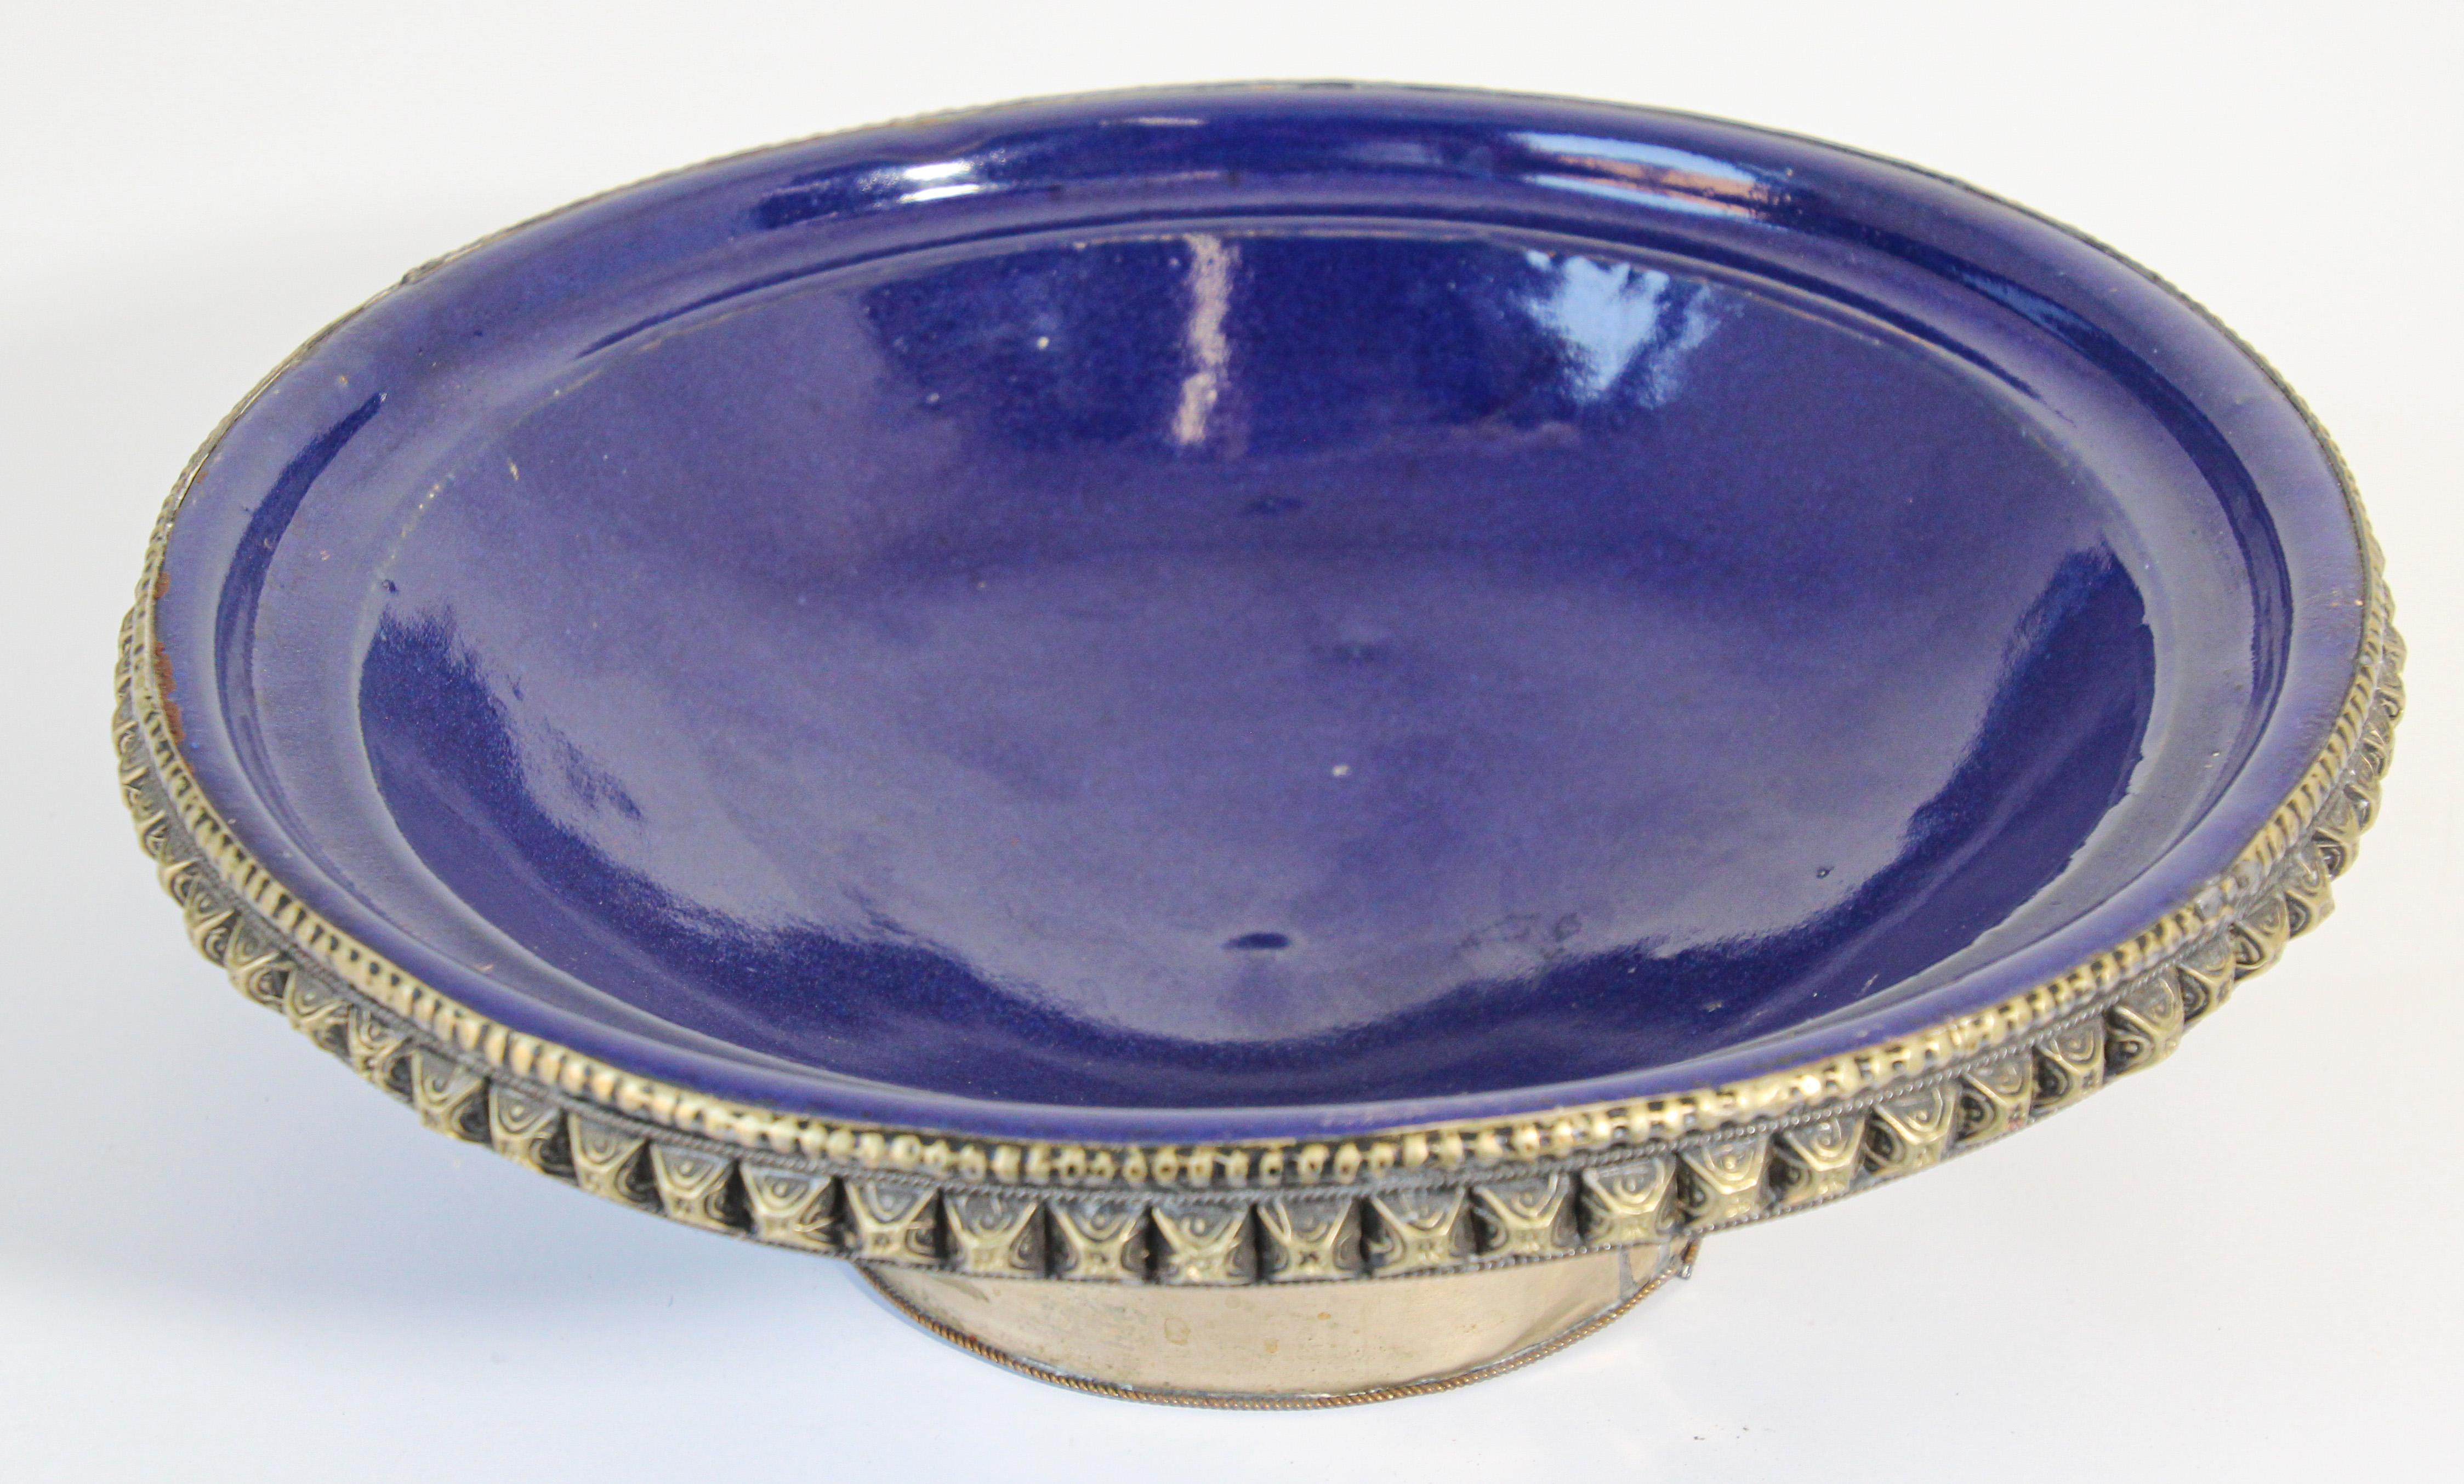 Magnifique bol marocain en céramique bleu cobalt sur pied avec recouvrement en métal argenté. 
Grand bol décoratif en céramique. 
Mesures : Diamètre 11 pouces x 4 pouces de hauteur.